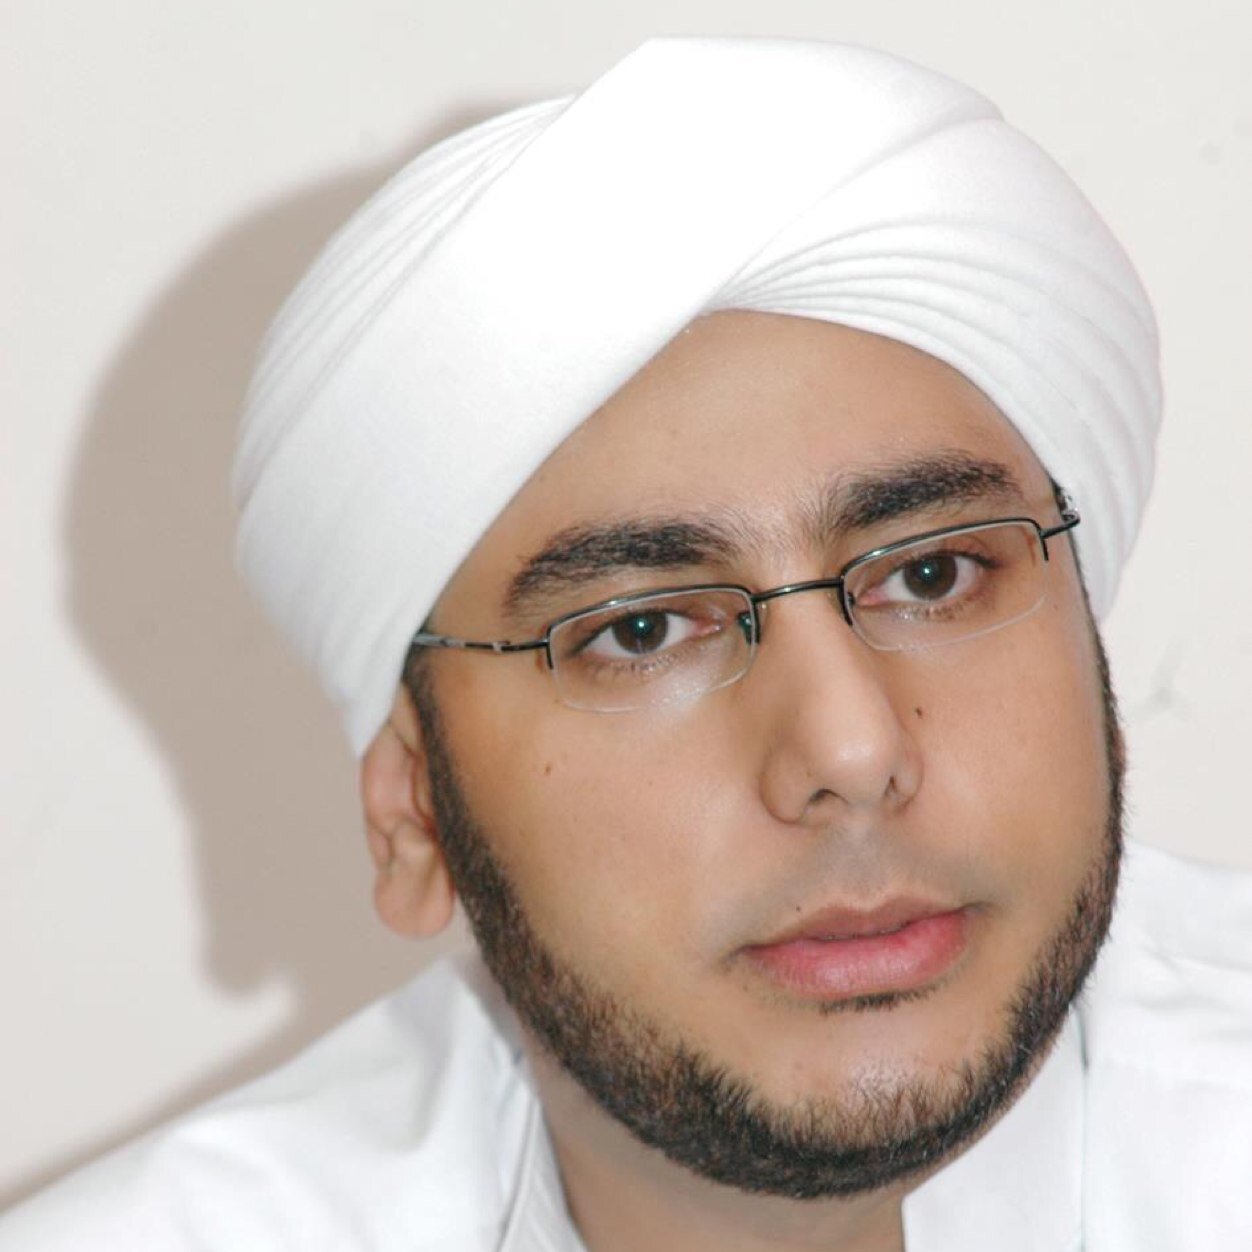 Alhabib muhammad Syahab (Pimpinan Majelis Al Anwar) Info lengkap dapat menghubungi Cp 0812 8105 479 / IG muhammad_syahab